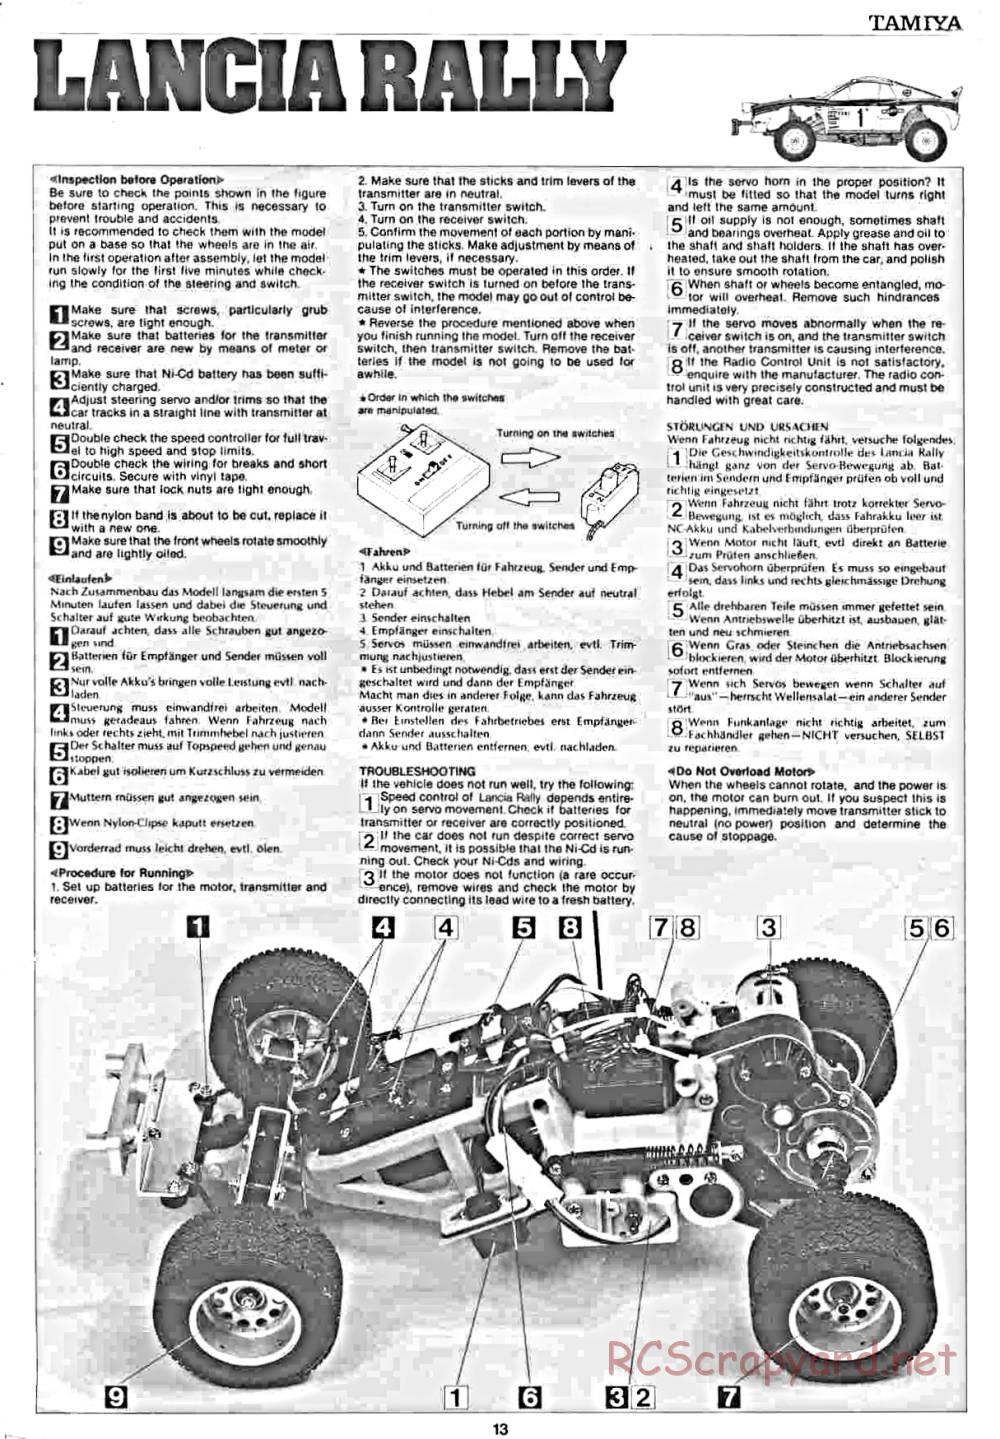 Tamiya - Lancia Rally - 58040 - Manual - Page 13